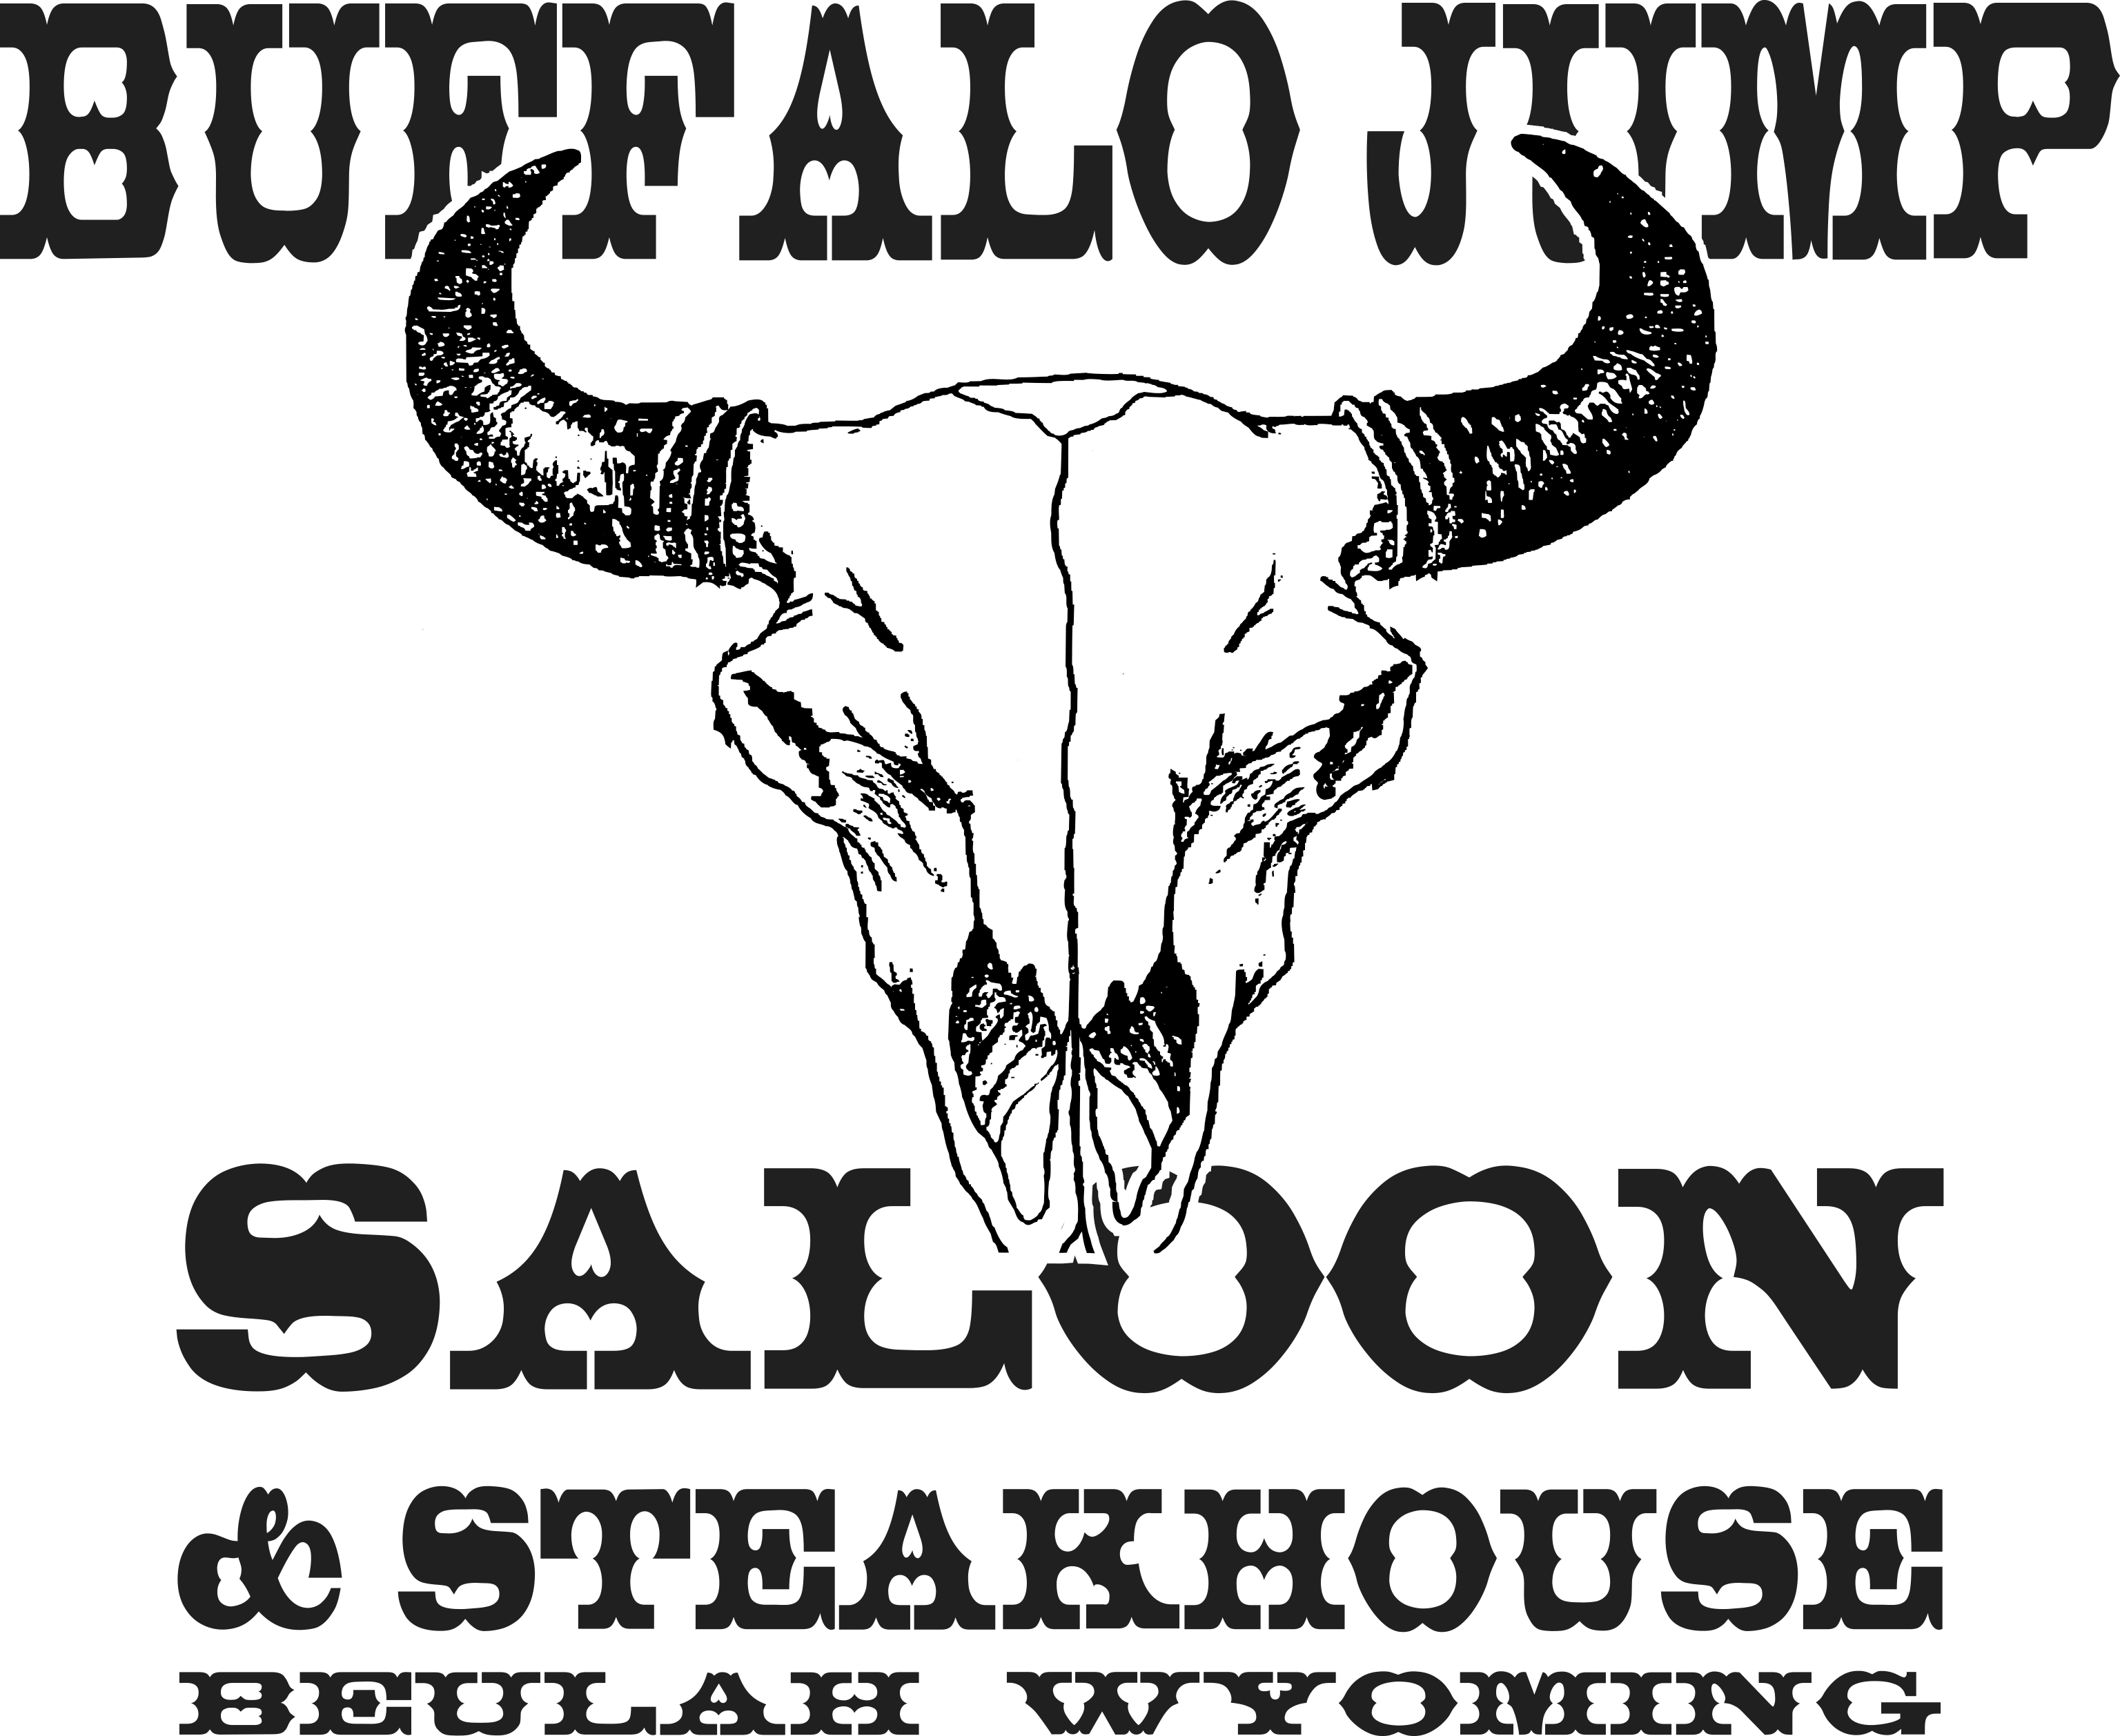 Buffalo Jump Saloon logo